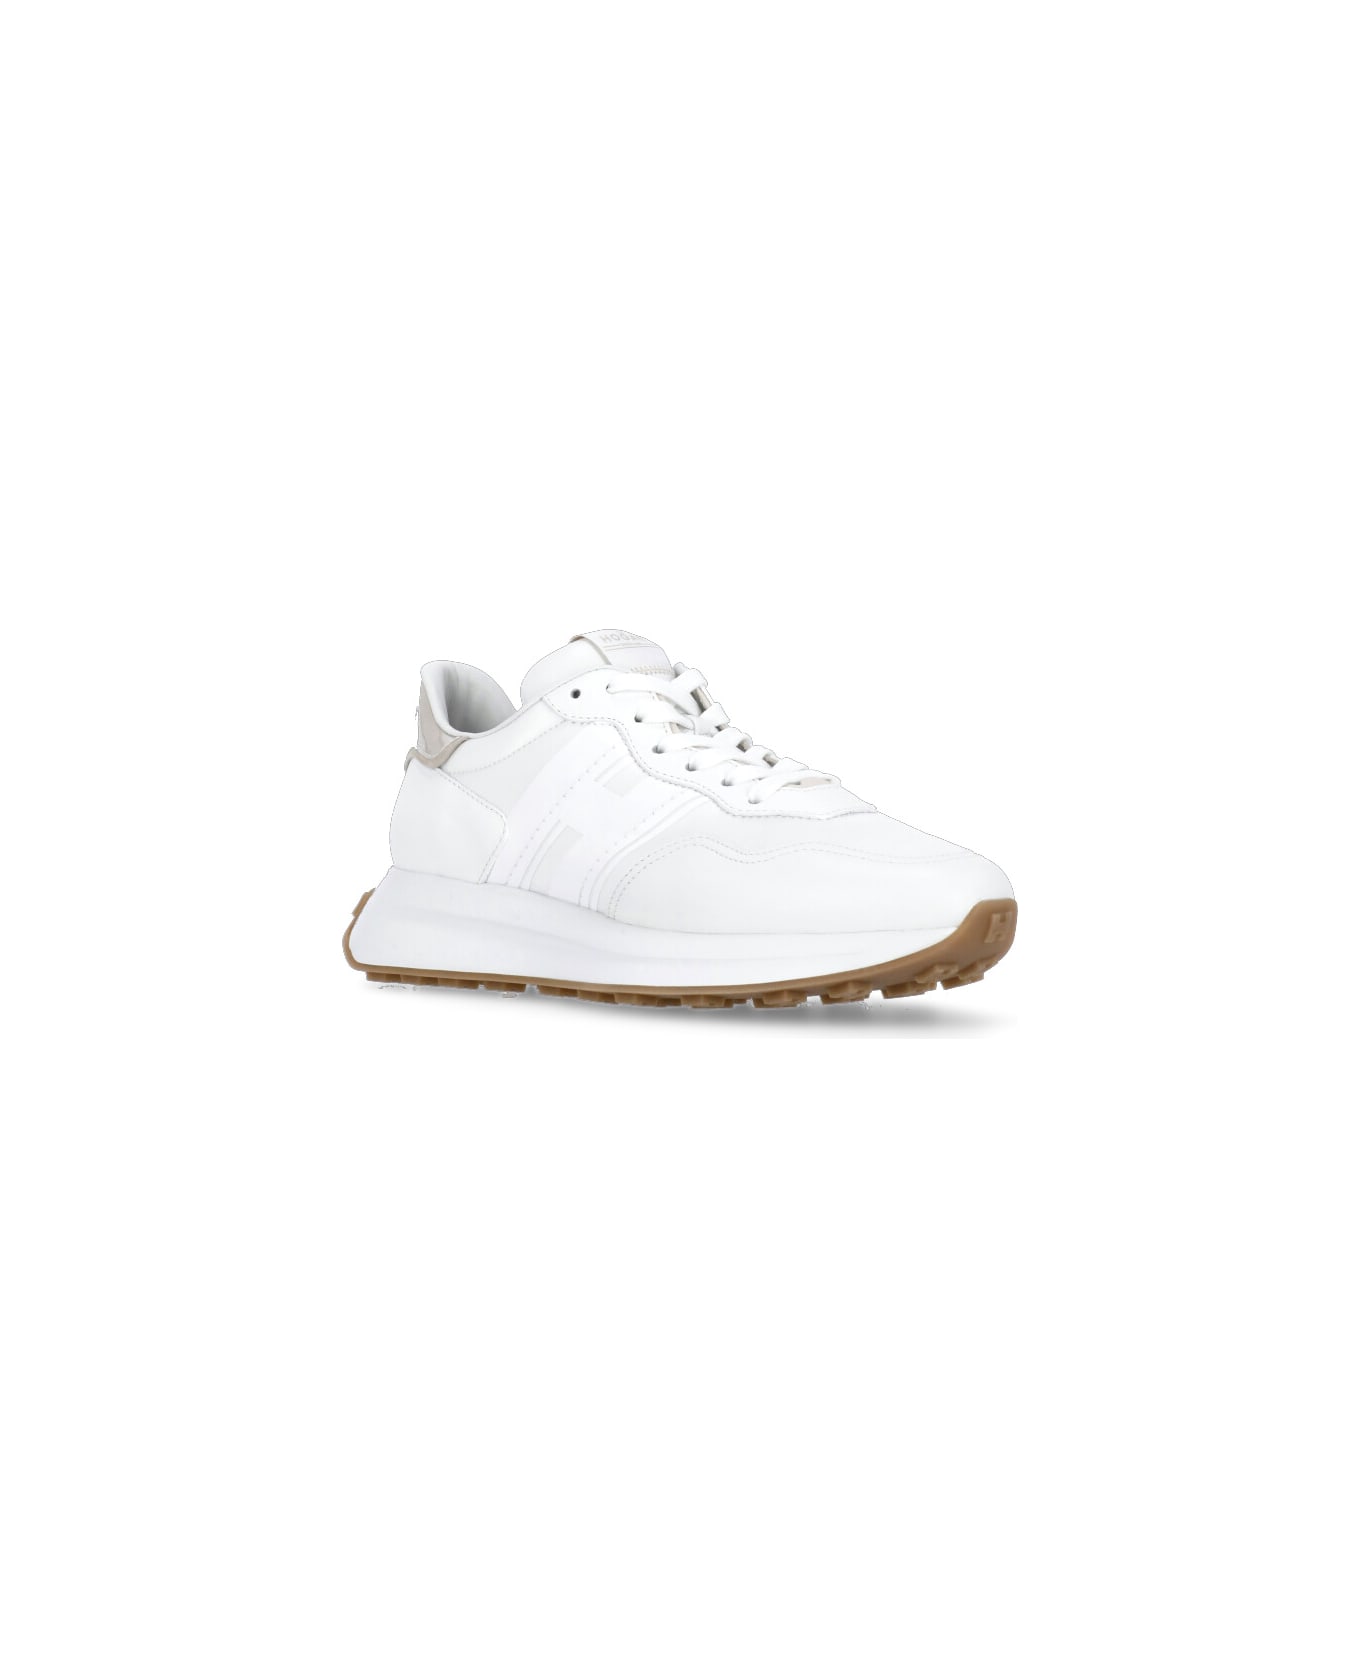 Hogan H641 Sneakers - White スニーカー